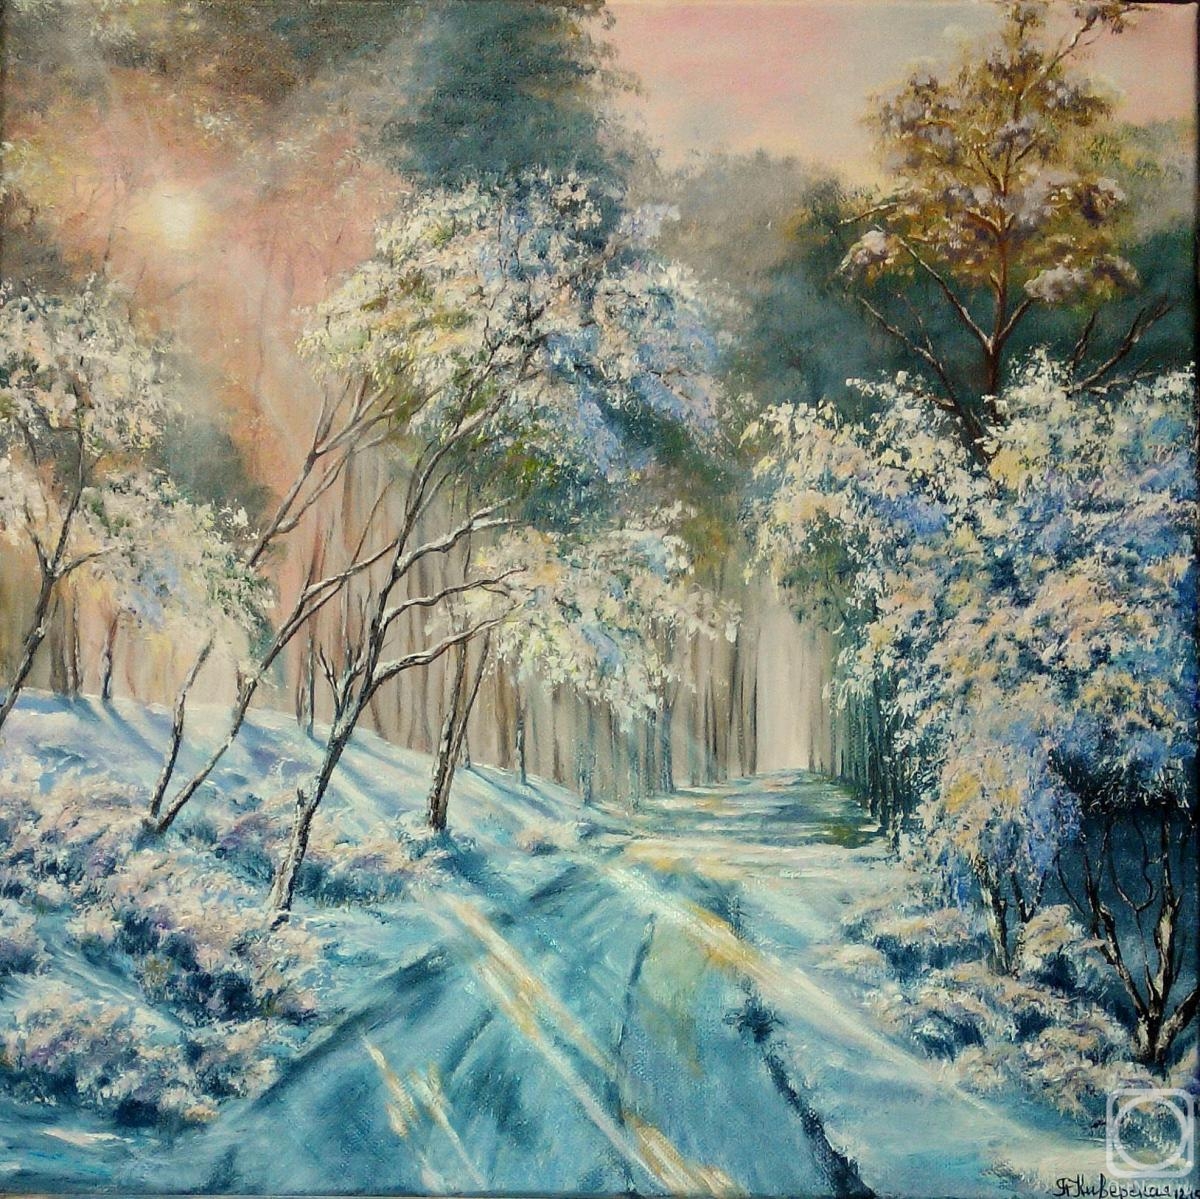 Kiverskaya Yana. Winter road to a fairy tale